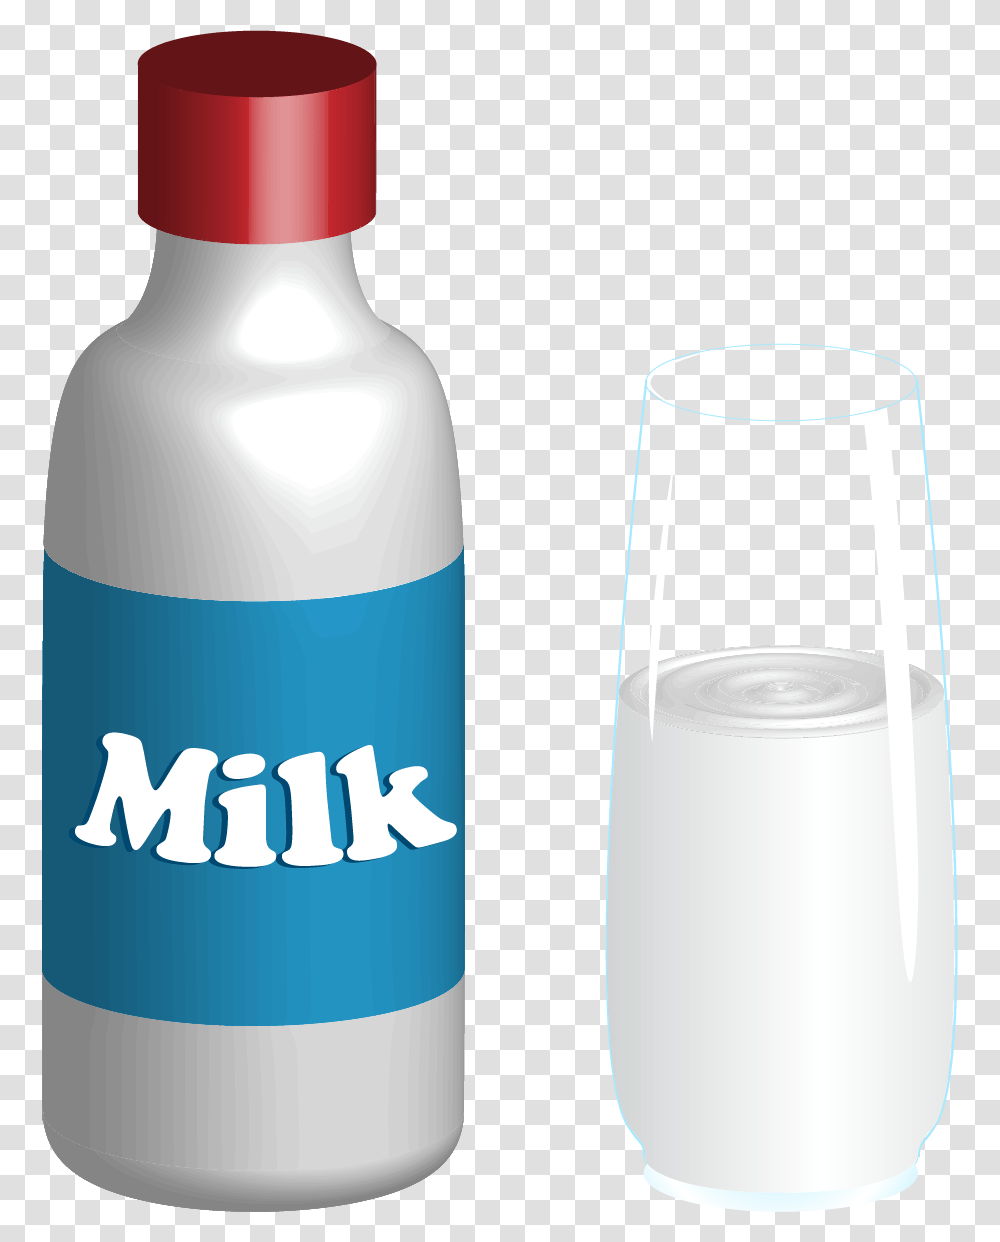 Milk 2005, Shaker, Bottle, Beverage, Glass Transparent Png